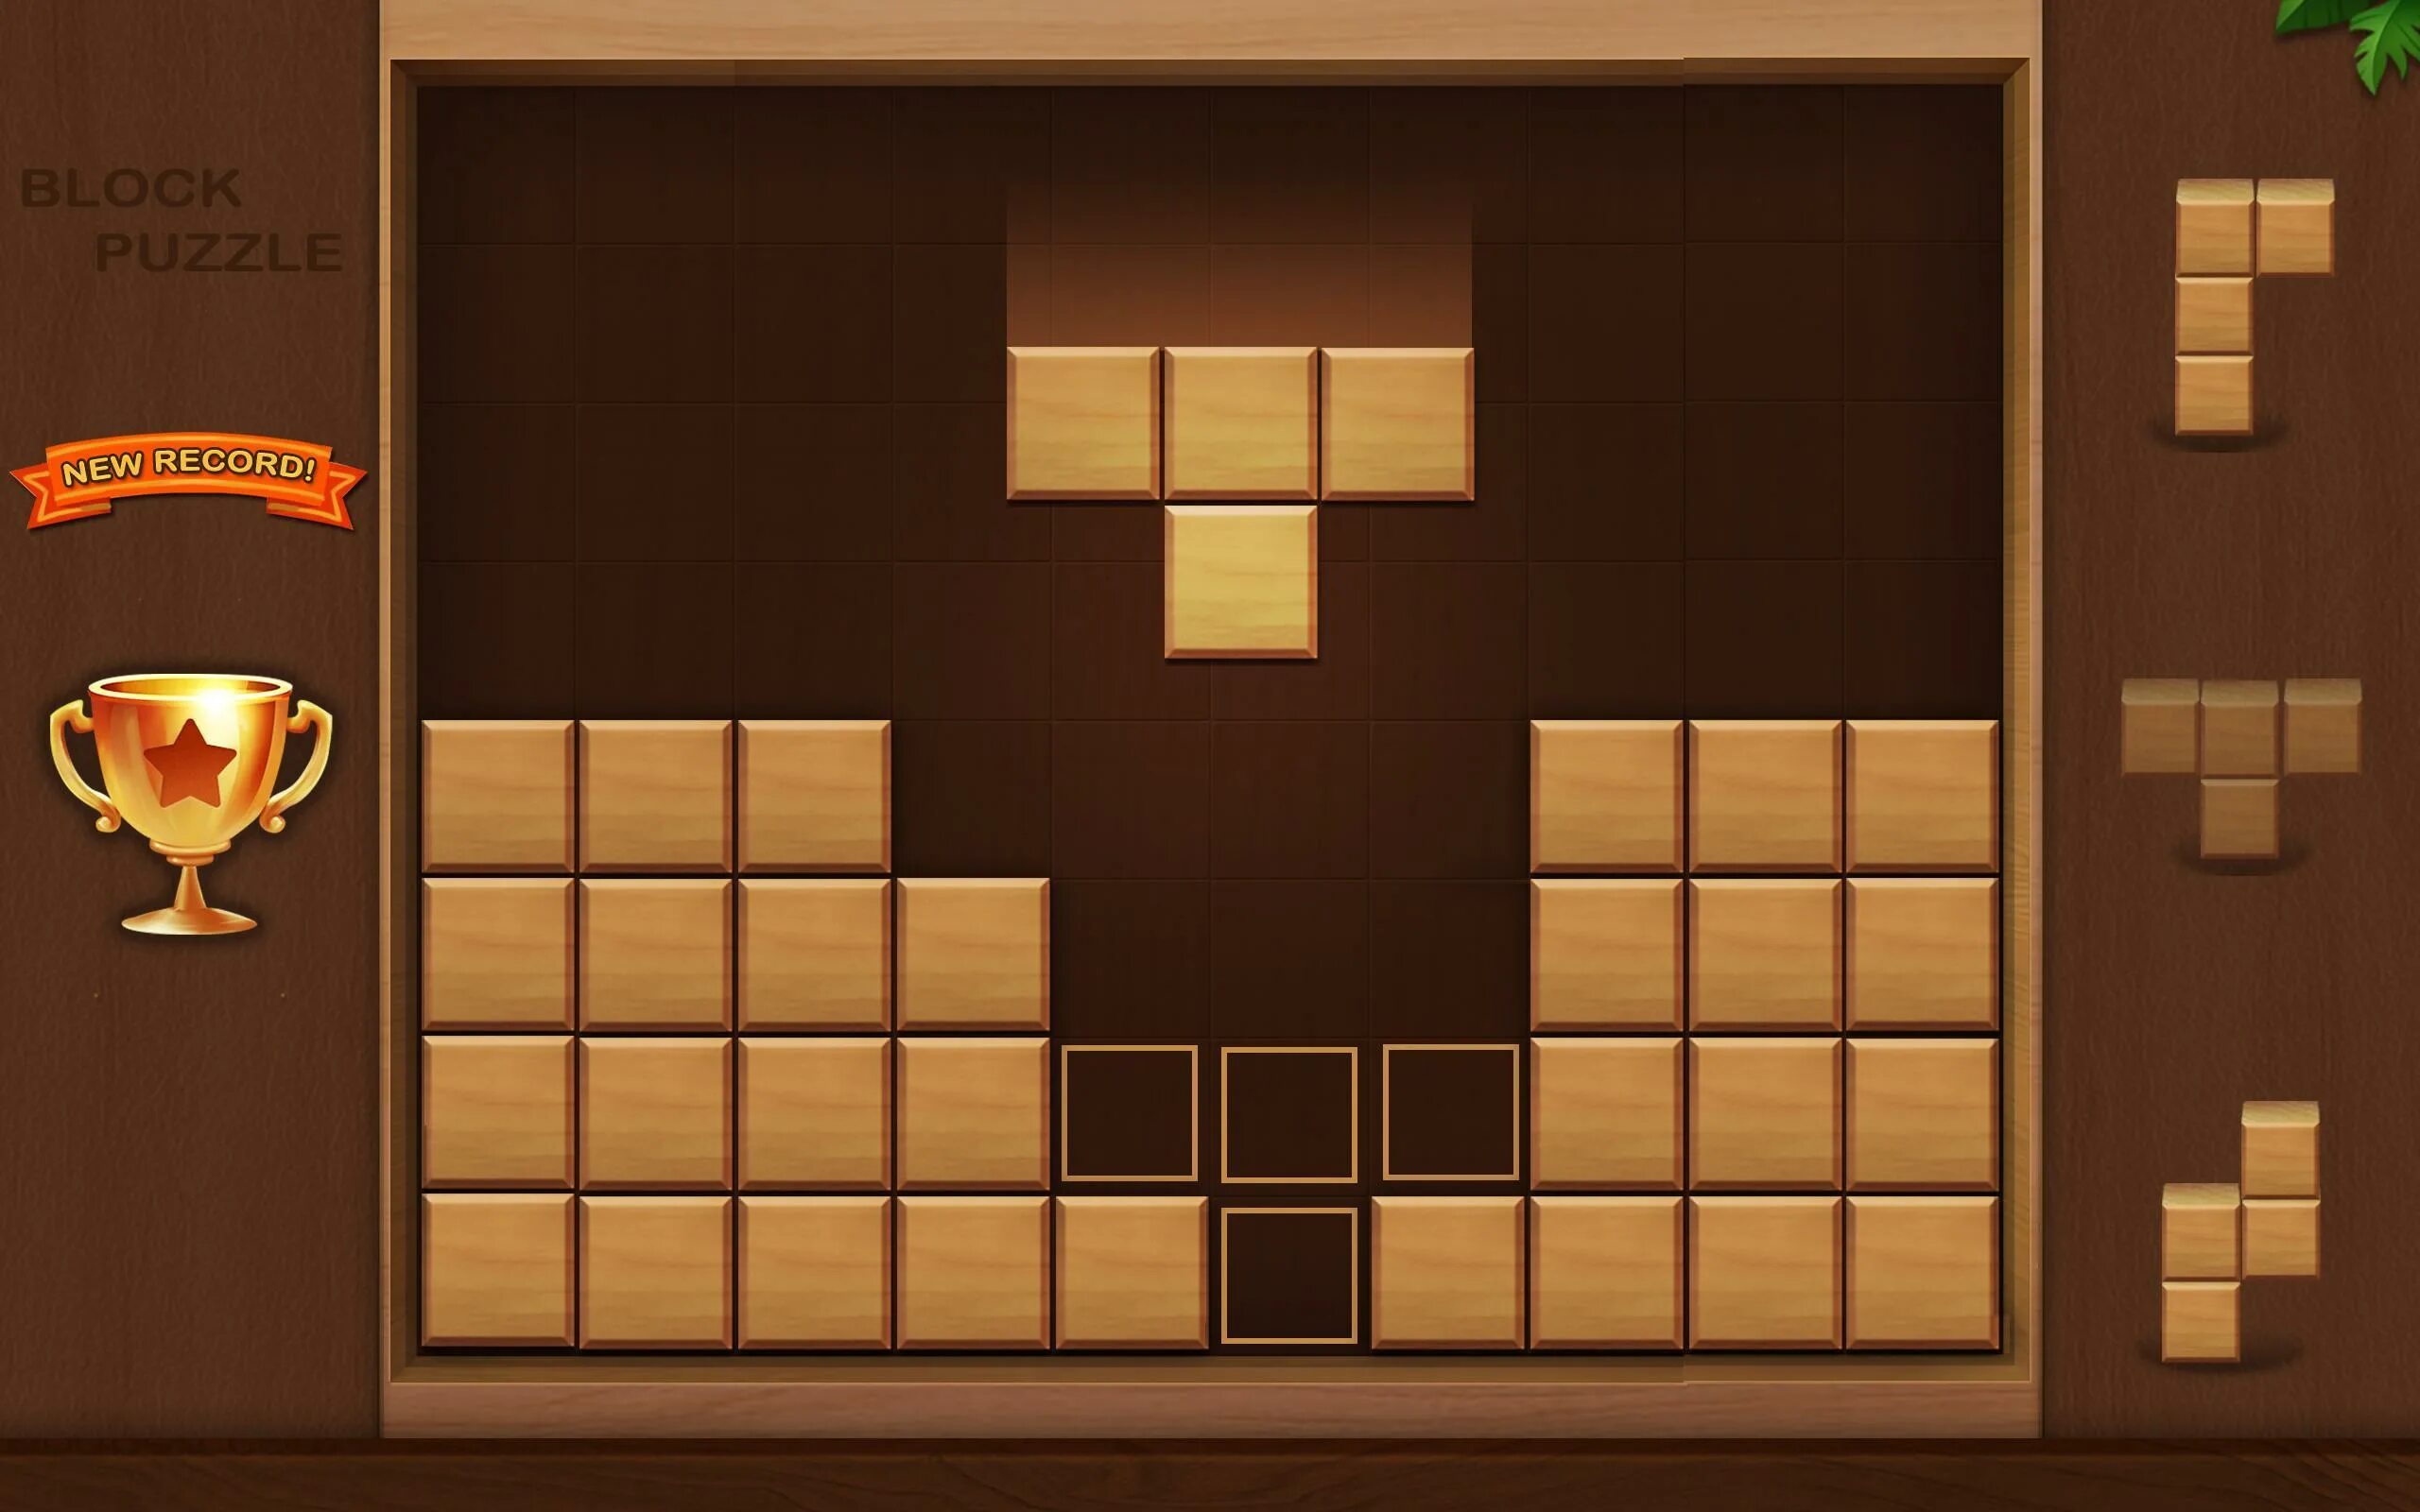 Игры из кубика строить. Cube Block игра. Игра Block Puzzle Block Block. Игра Block Puzzle рекорд. Блоки для игры.